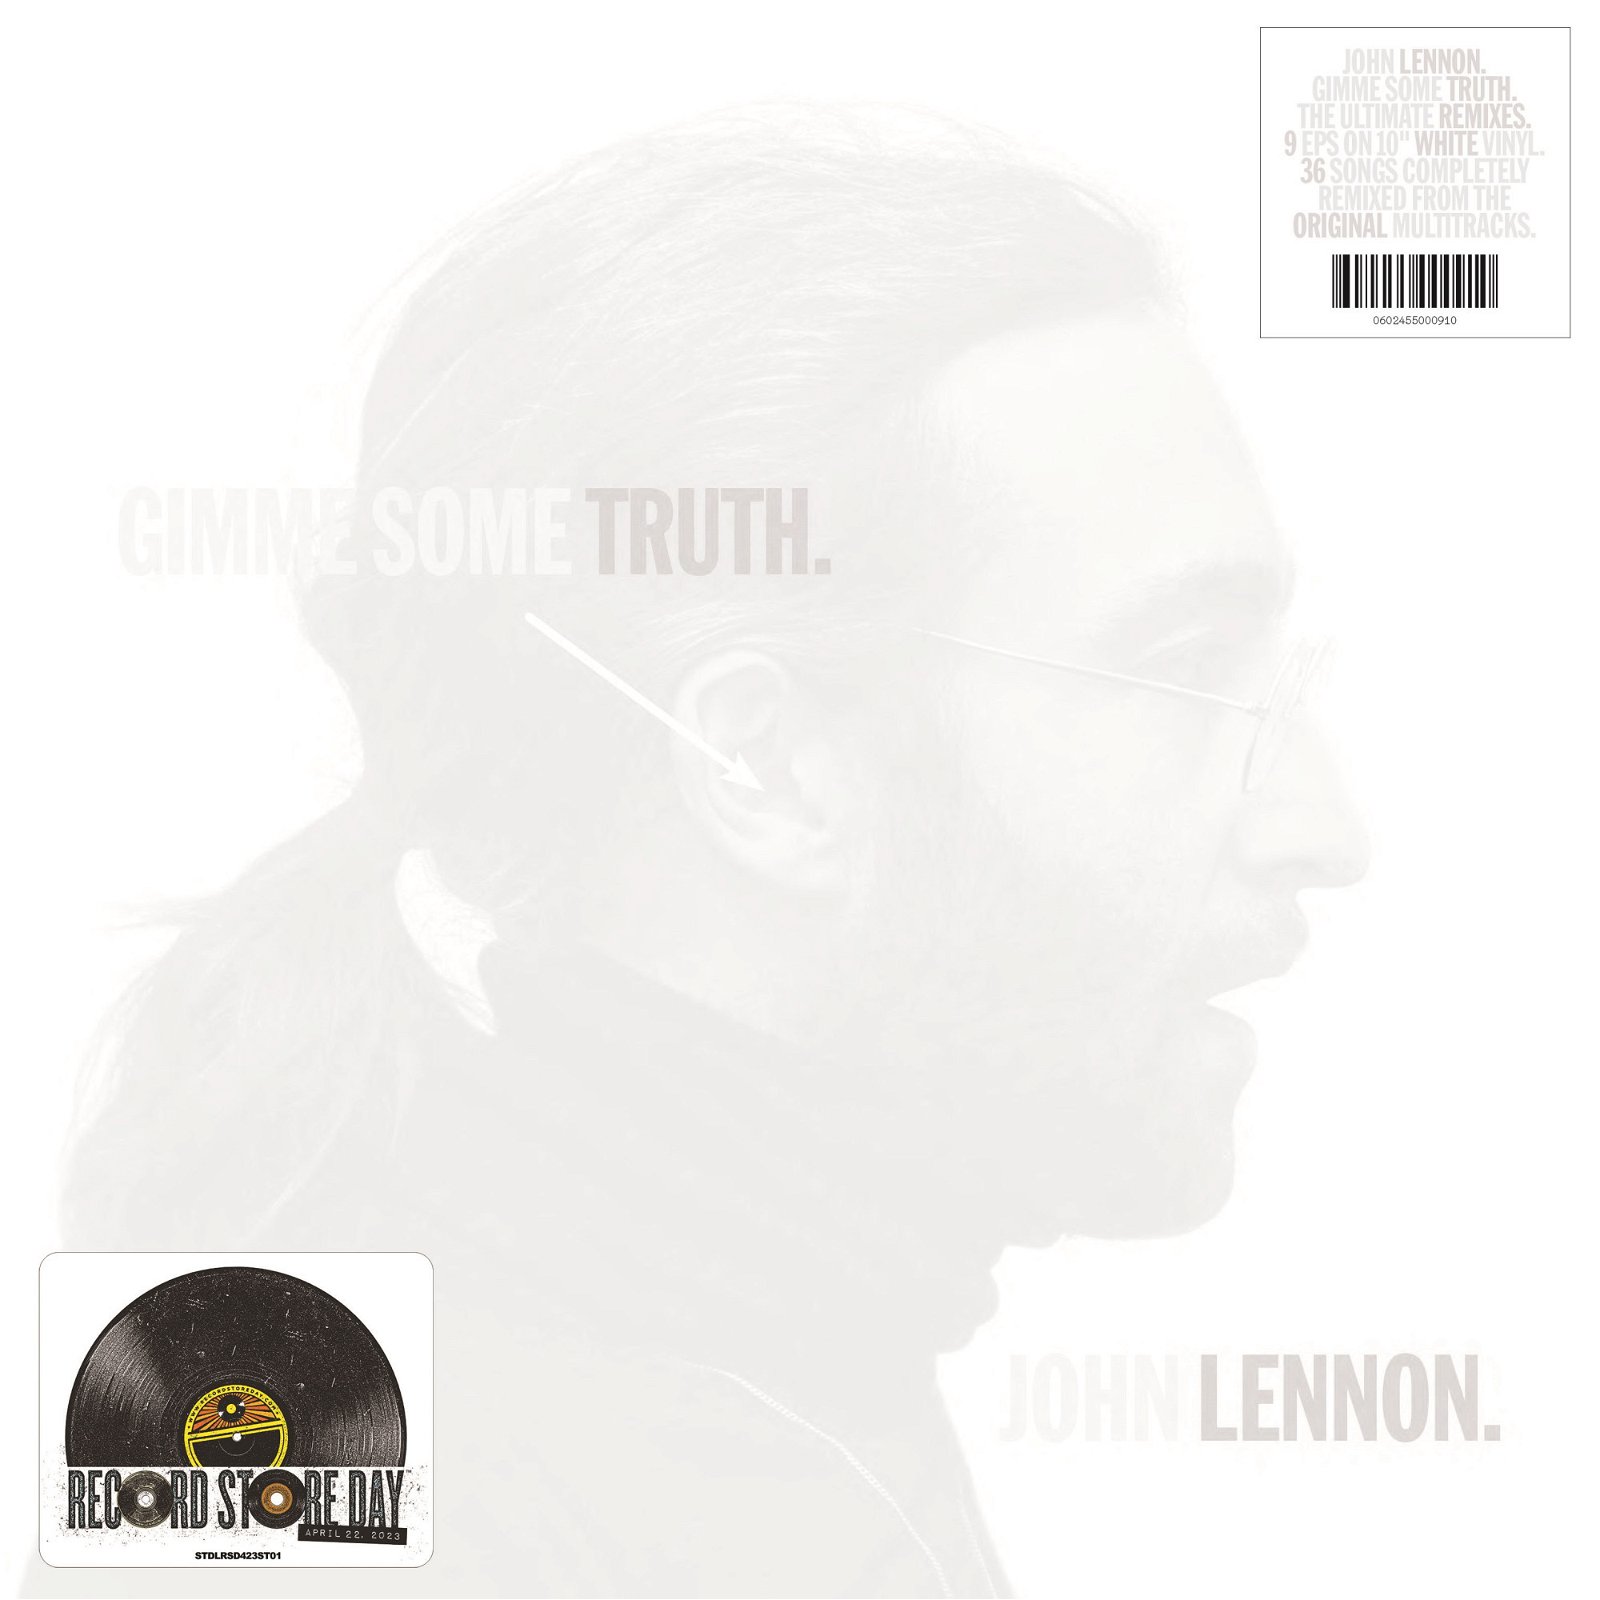 CD Shop - LENNON, JOHN GIMME SOME TRUTH